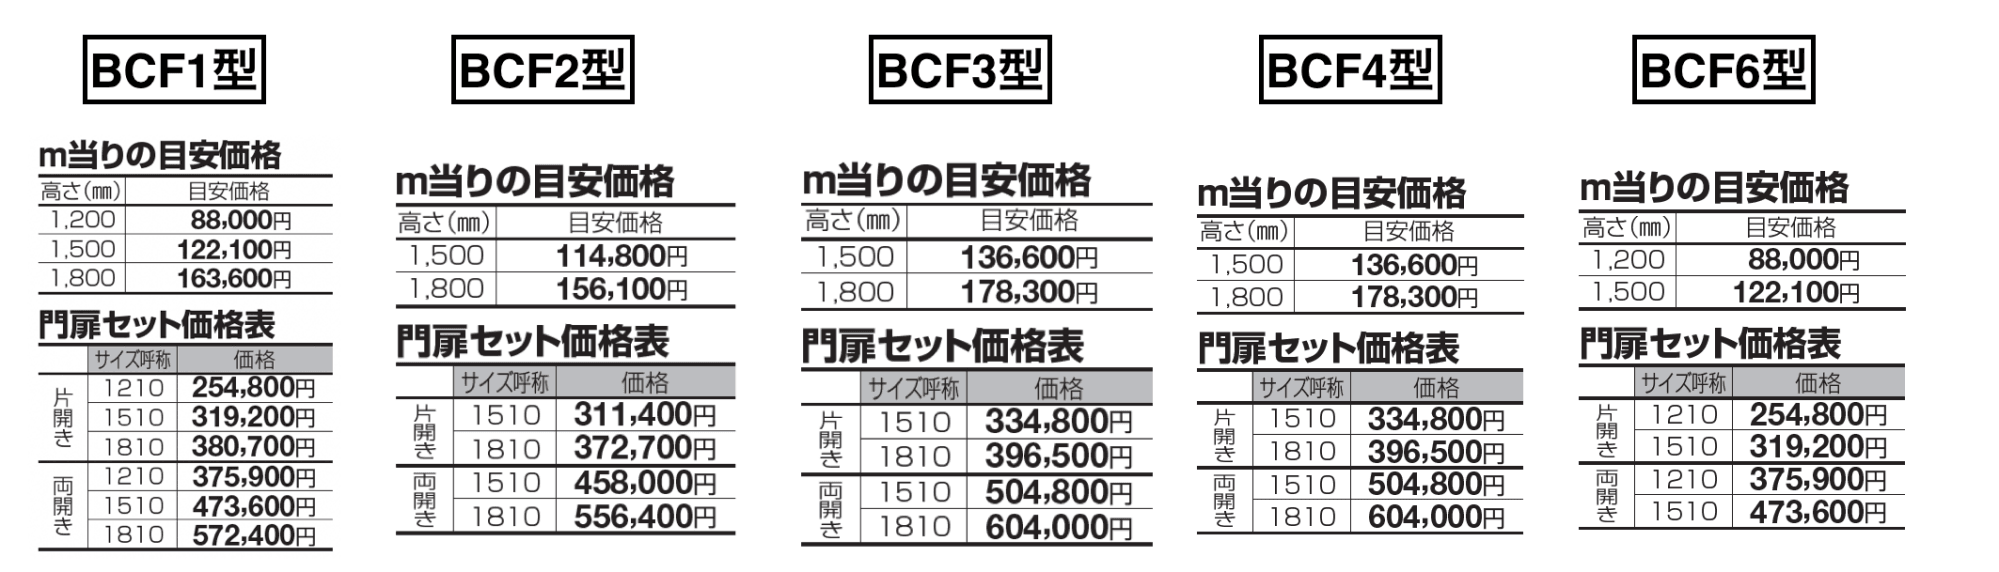 BCF1型〜4型/6型_価格_1